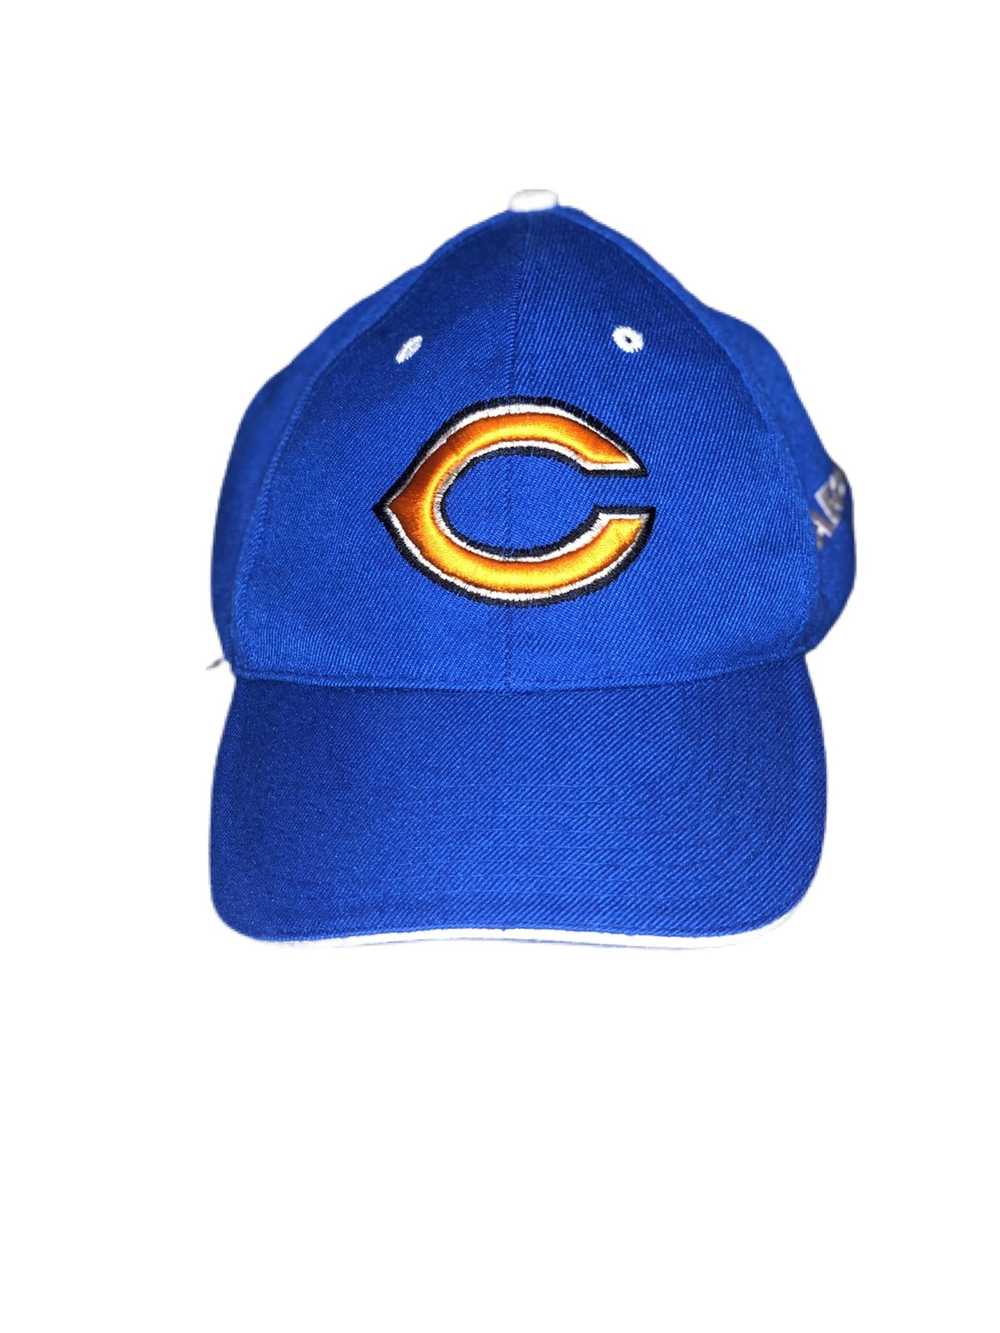 Vintage Vintage Chicago Bears Hat - image 1